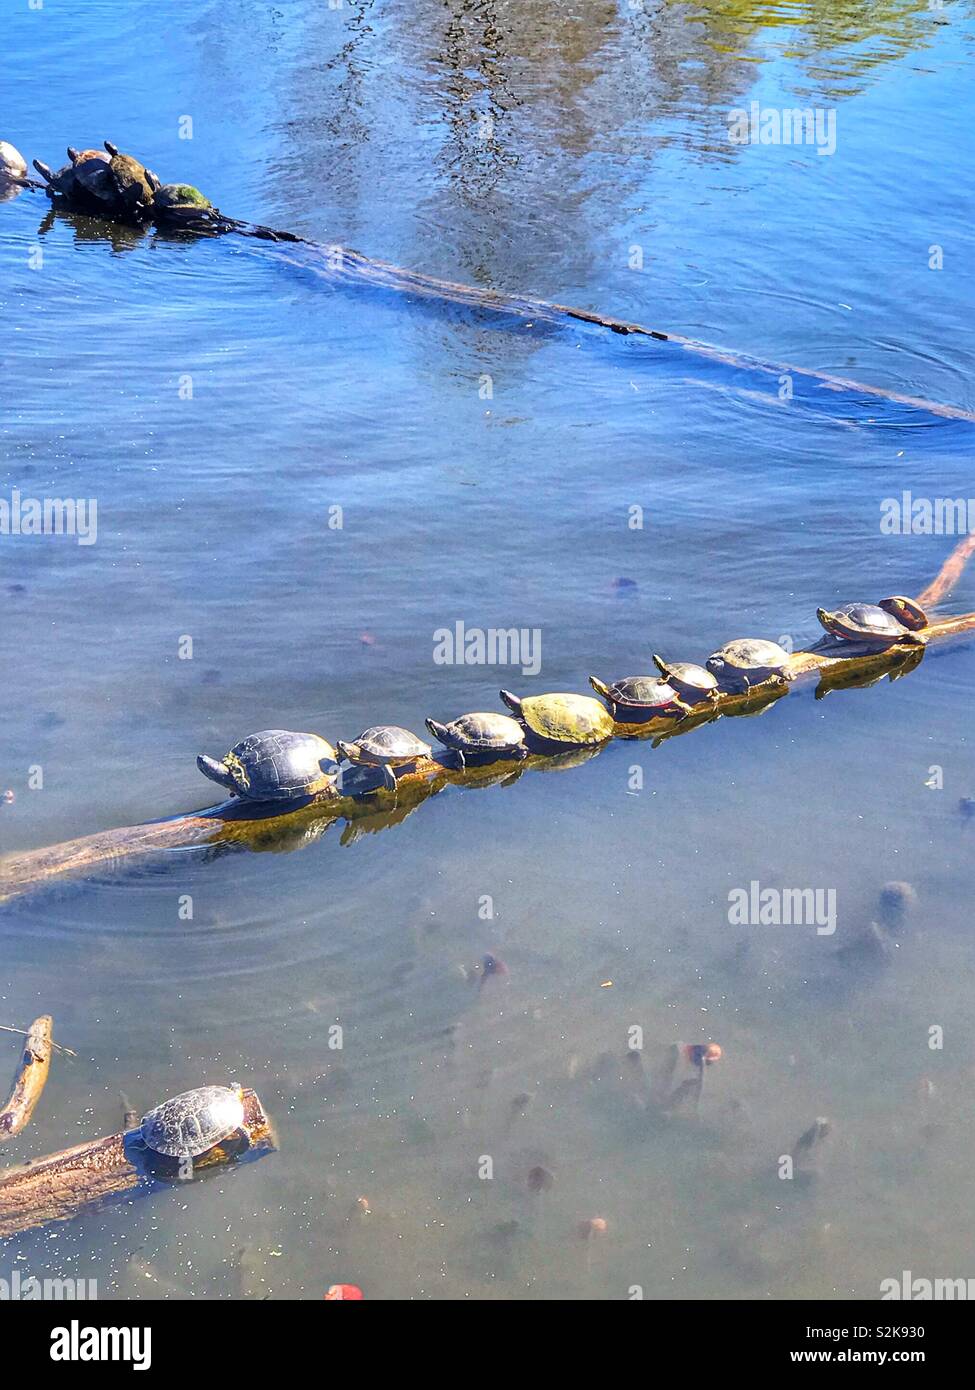 Tortugas sentados en un tronco en el agua, tomando sol en el sol para calentarse Foto de stock